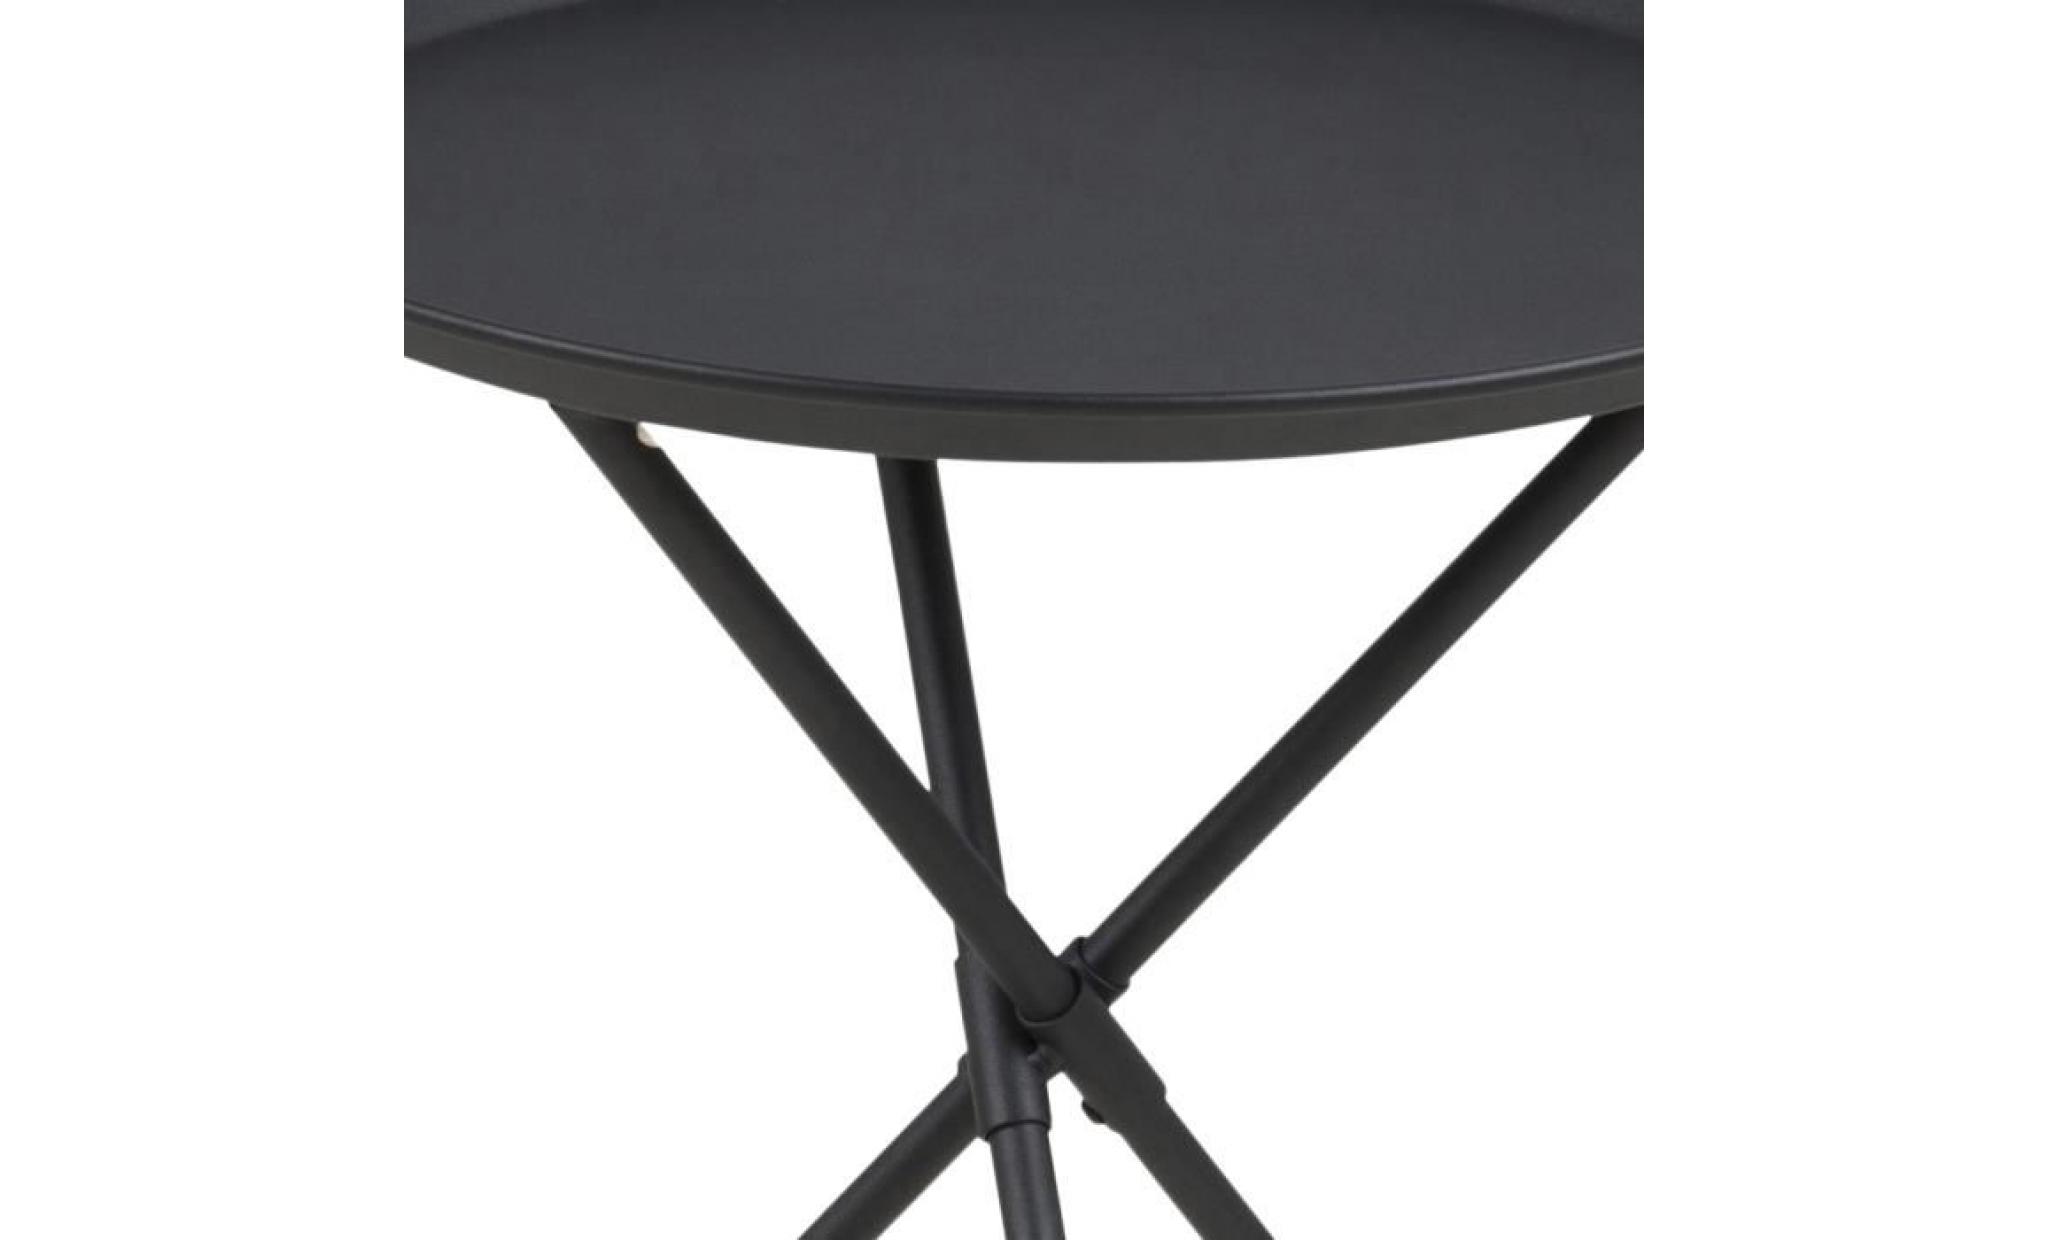 table basse / table d’appoint   sparky   38,5 cm   gris   métal revêtu de poudre   style scandinave   style industriel pas cher